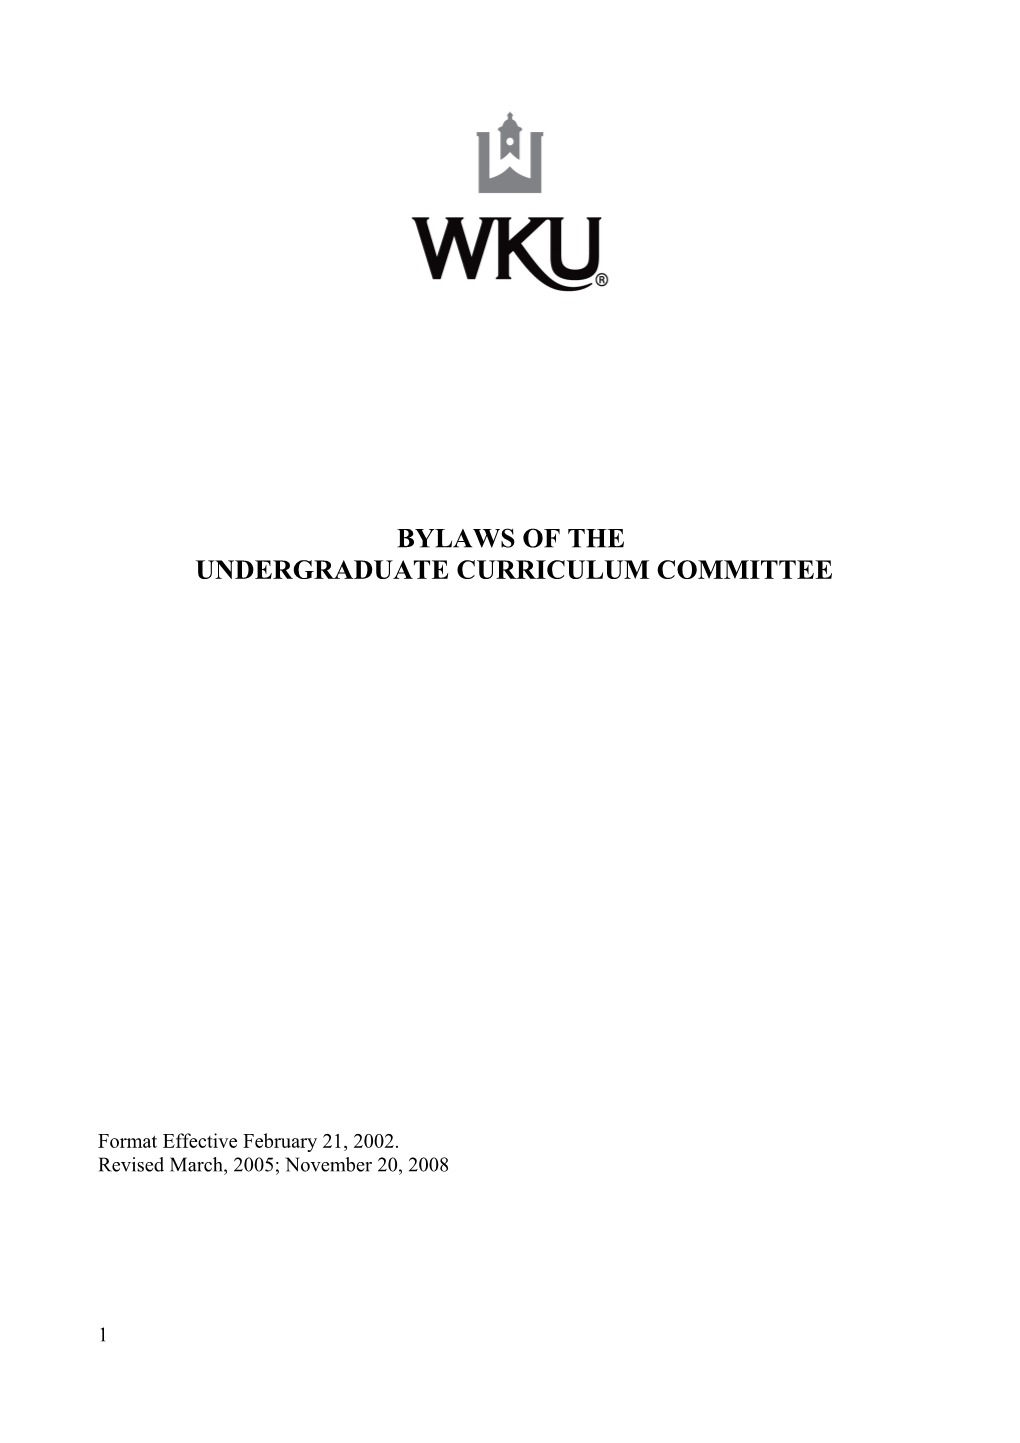 Undergraduate Curriculum Committee